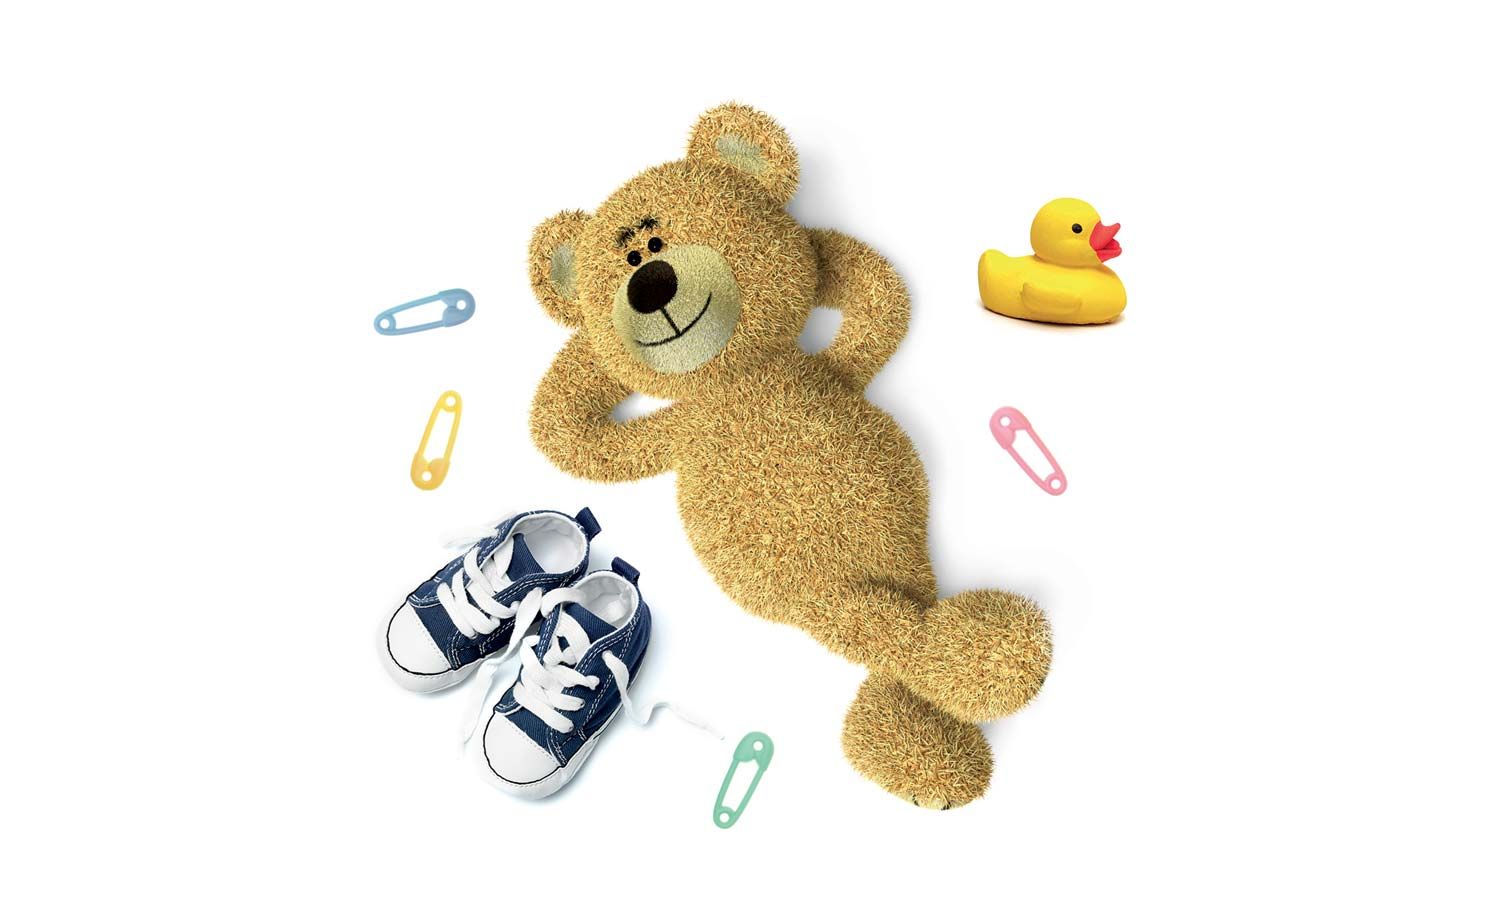 Composizione visual di un orsacchiotto usato nel packaging design di prodotti cosmetici naturali per bambini realizzato da WillBe